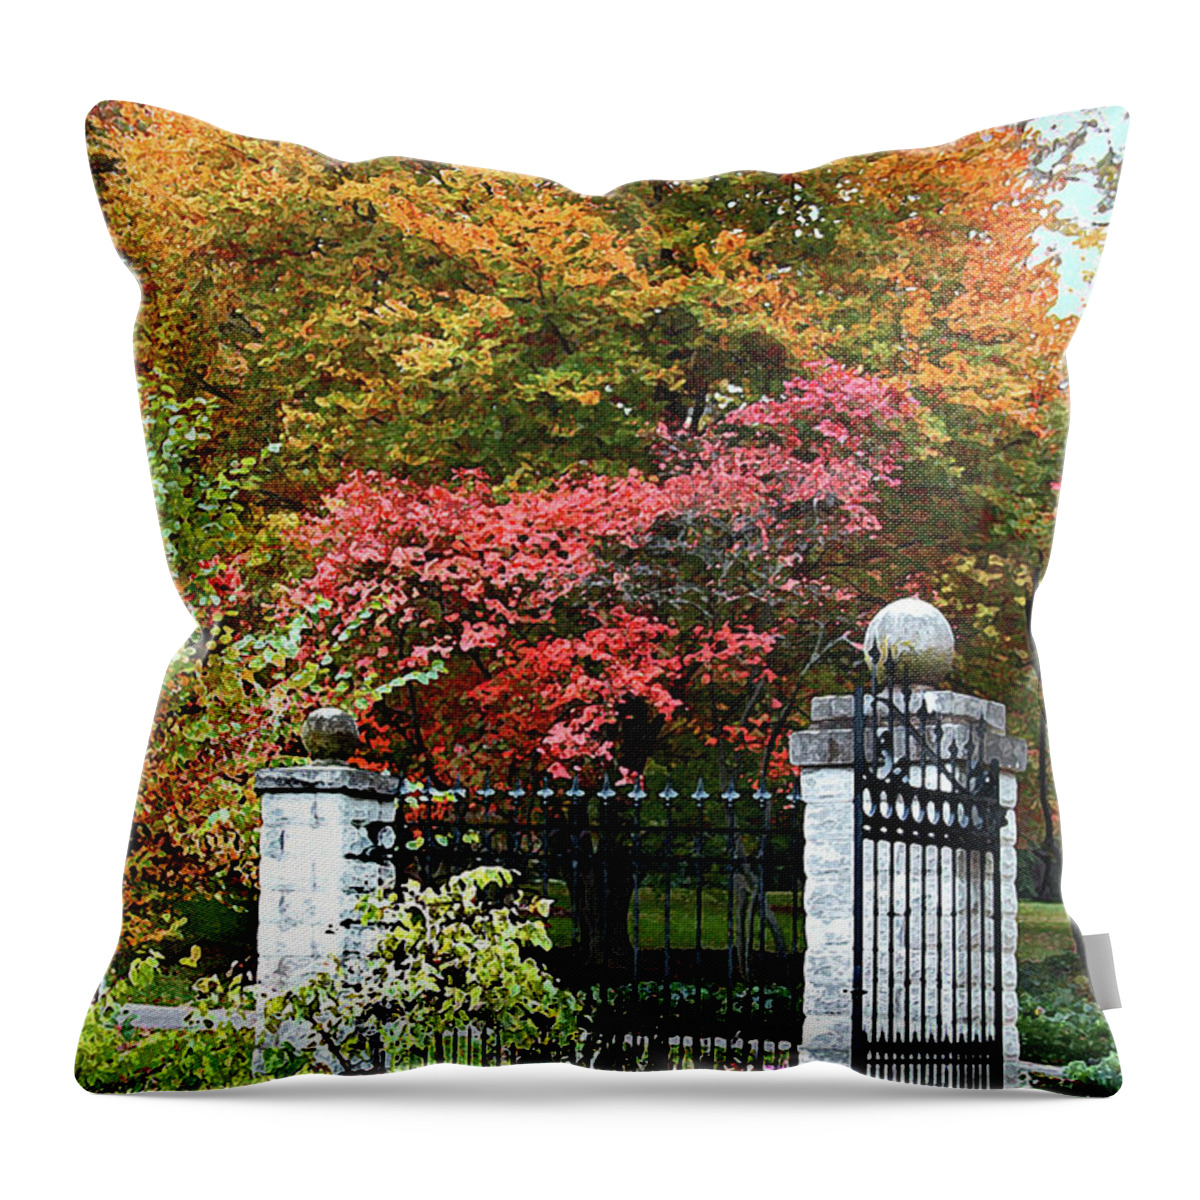 Garden Gate Throw Pillow featuring the digital art Garden Gate by John Lautermilch